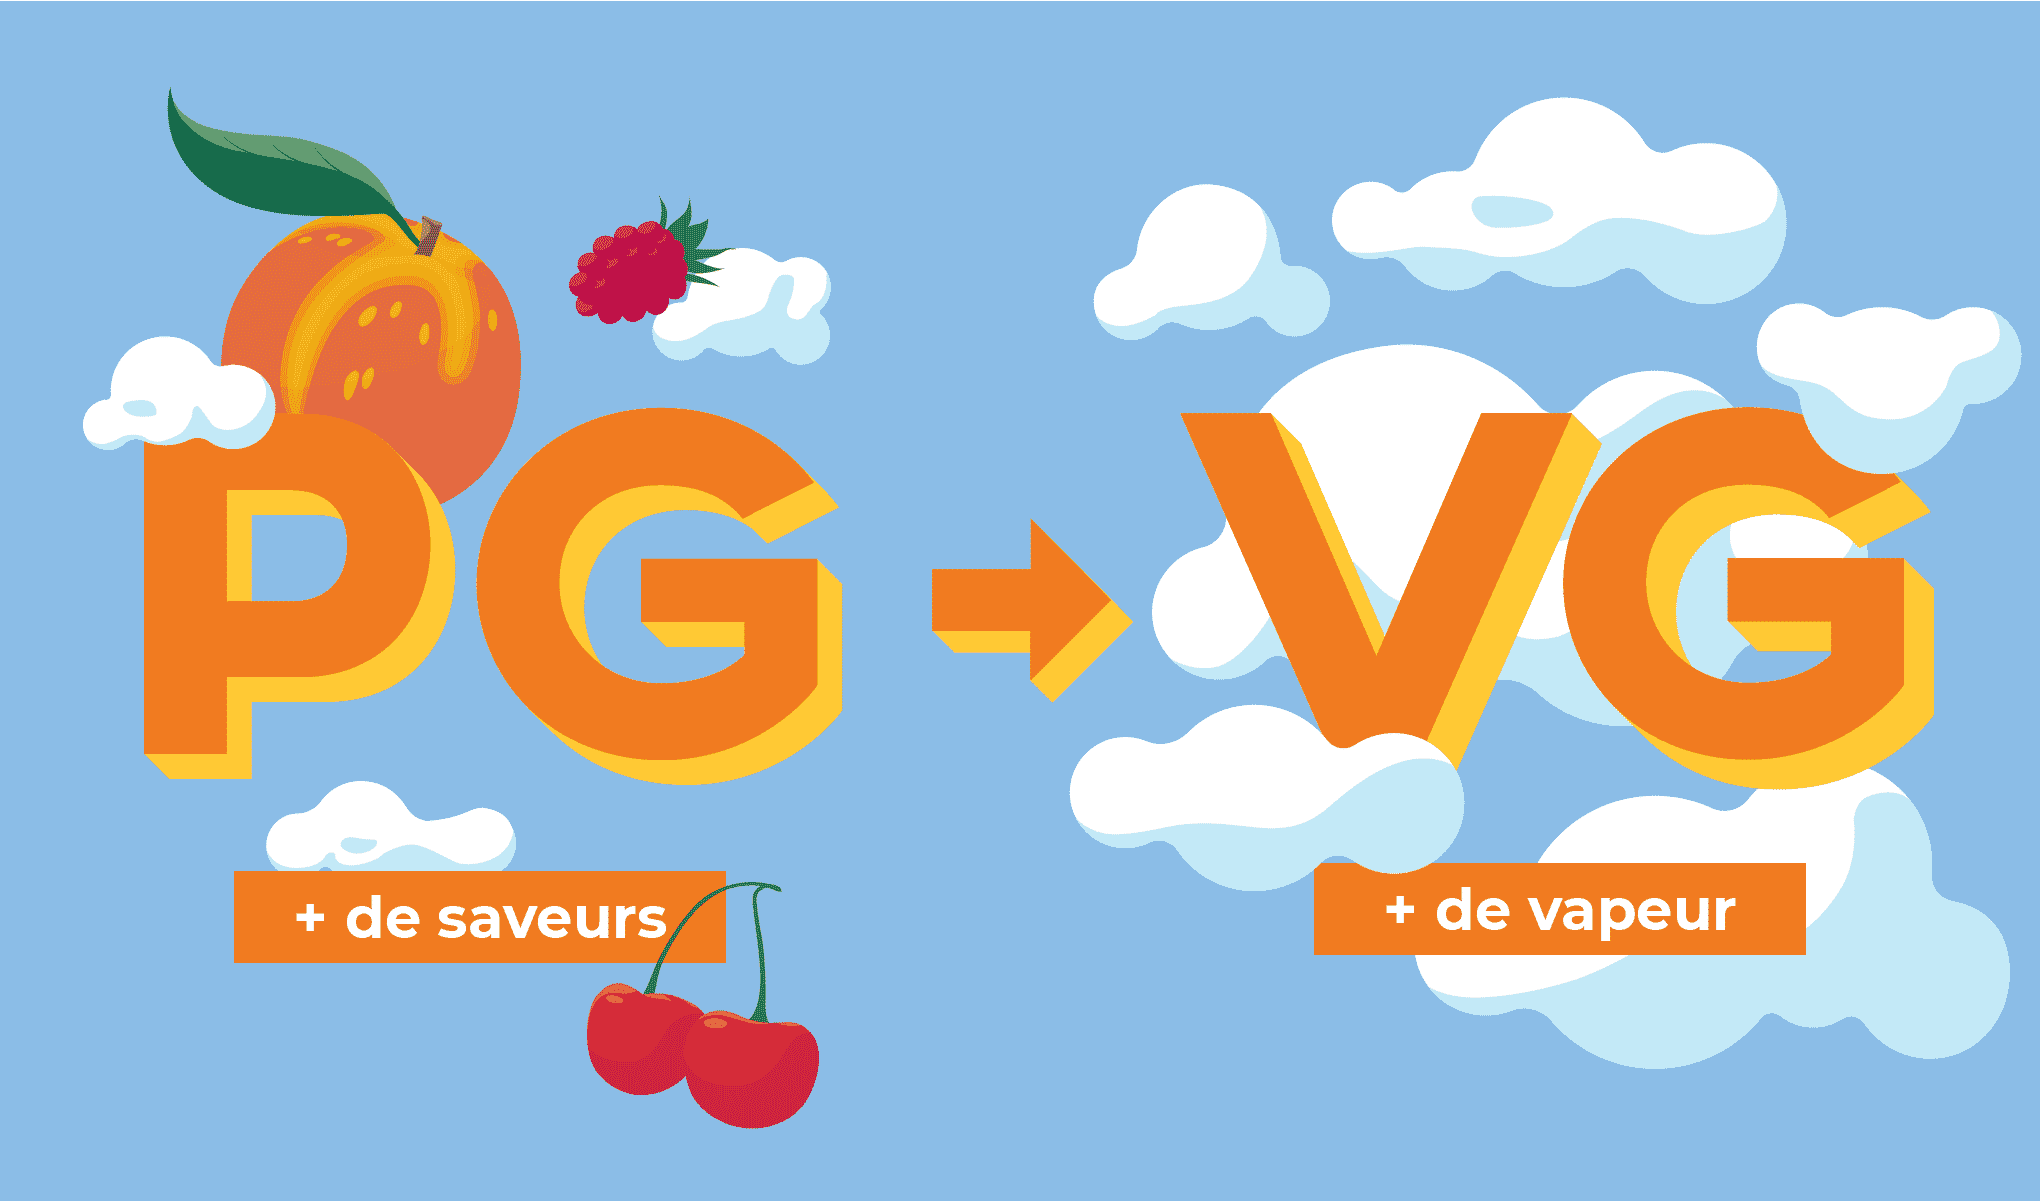 Impact du taux de PG et de VG sur les saveurs et la vapeur